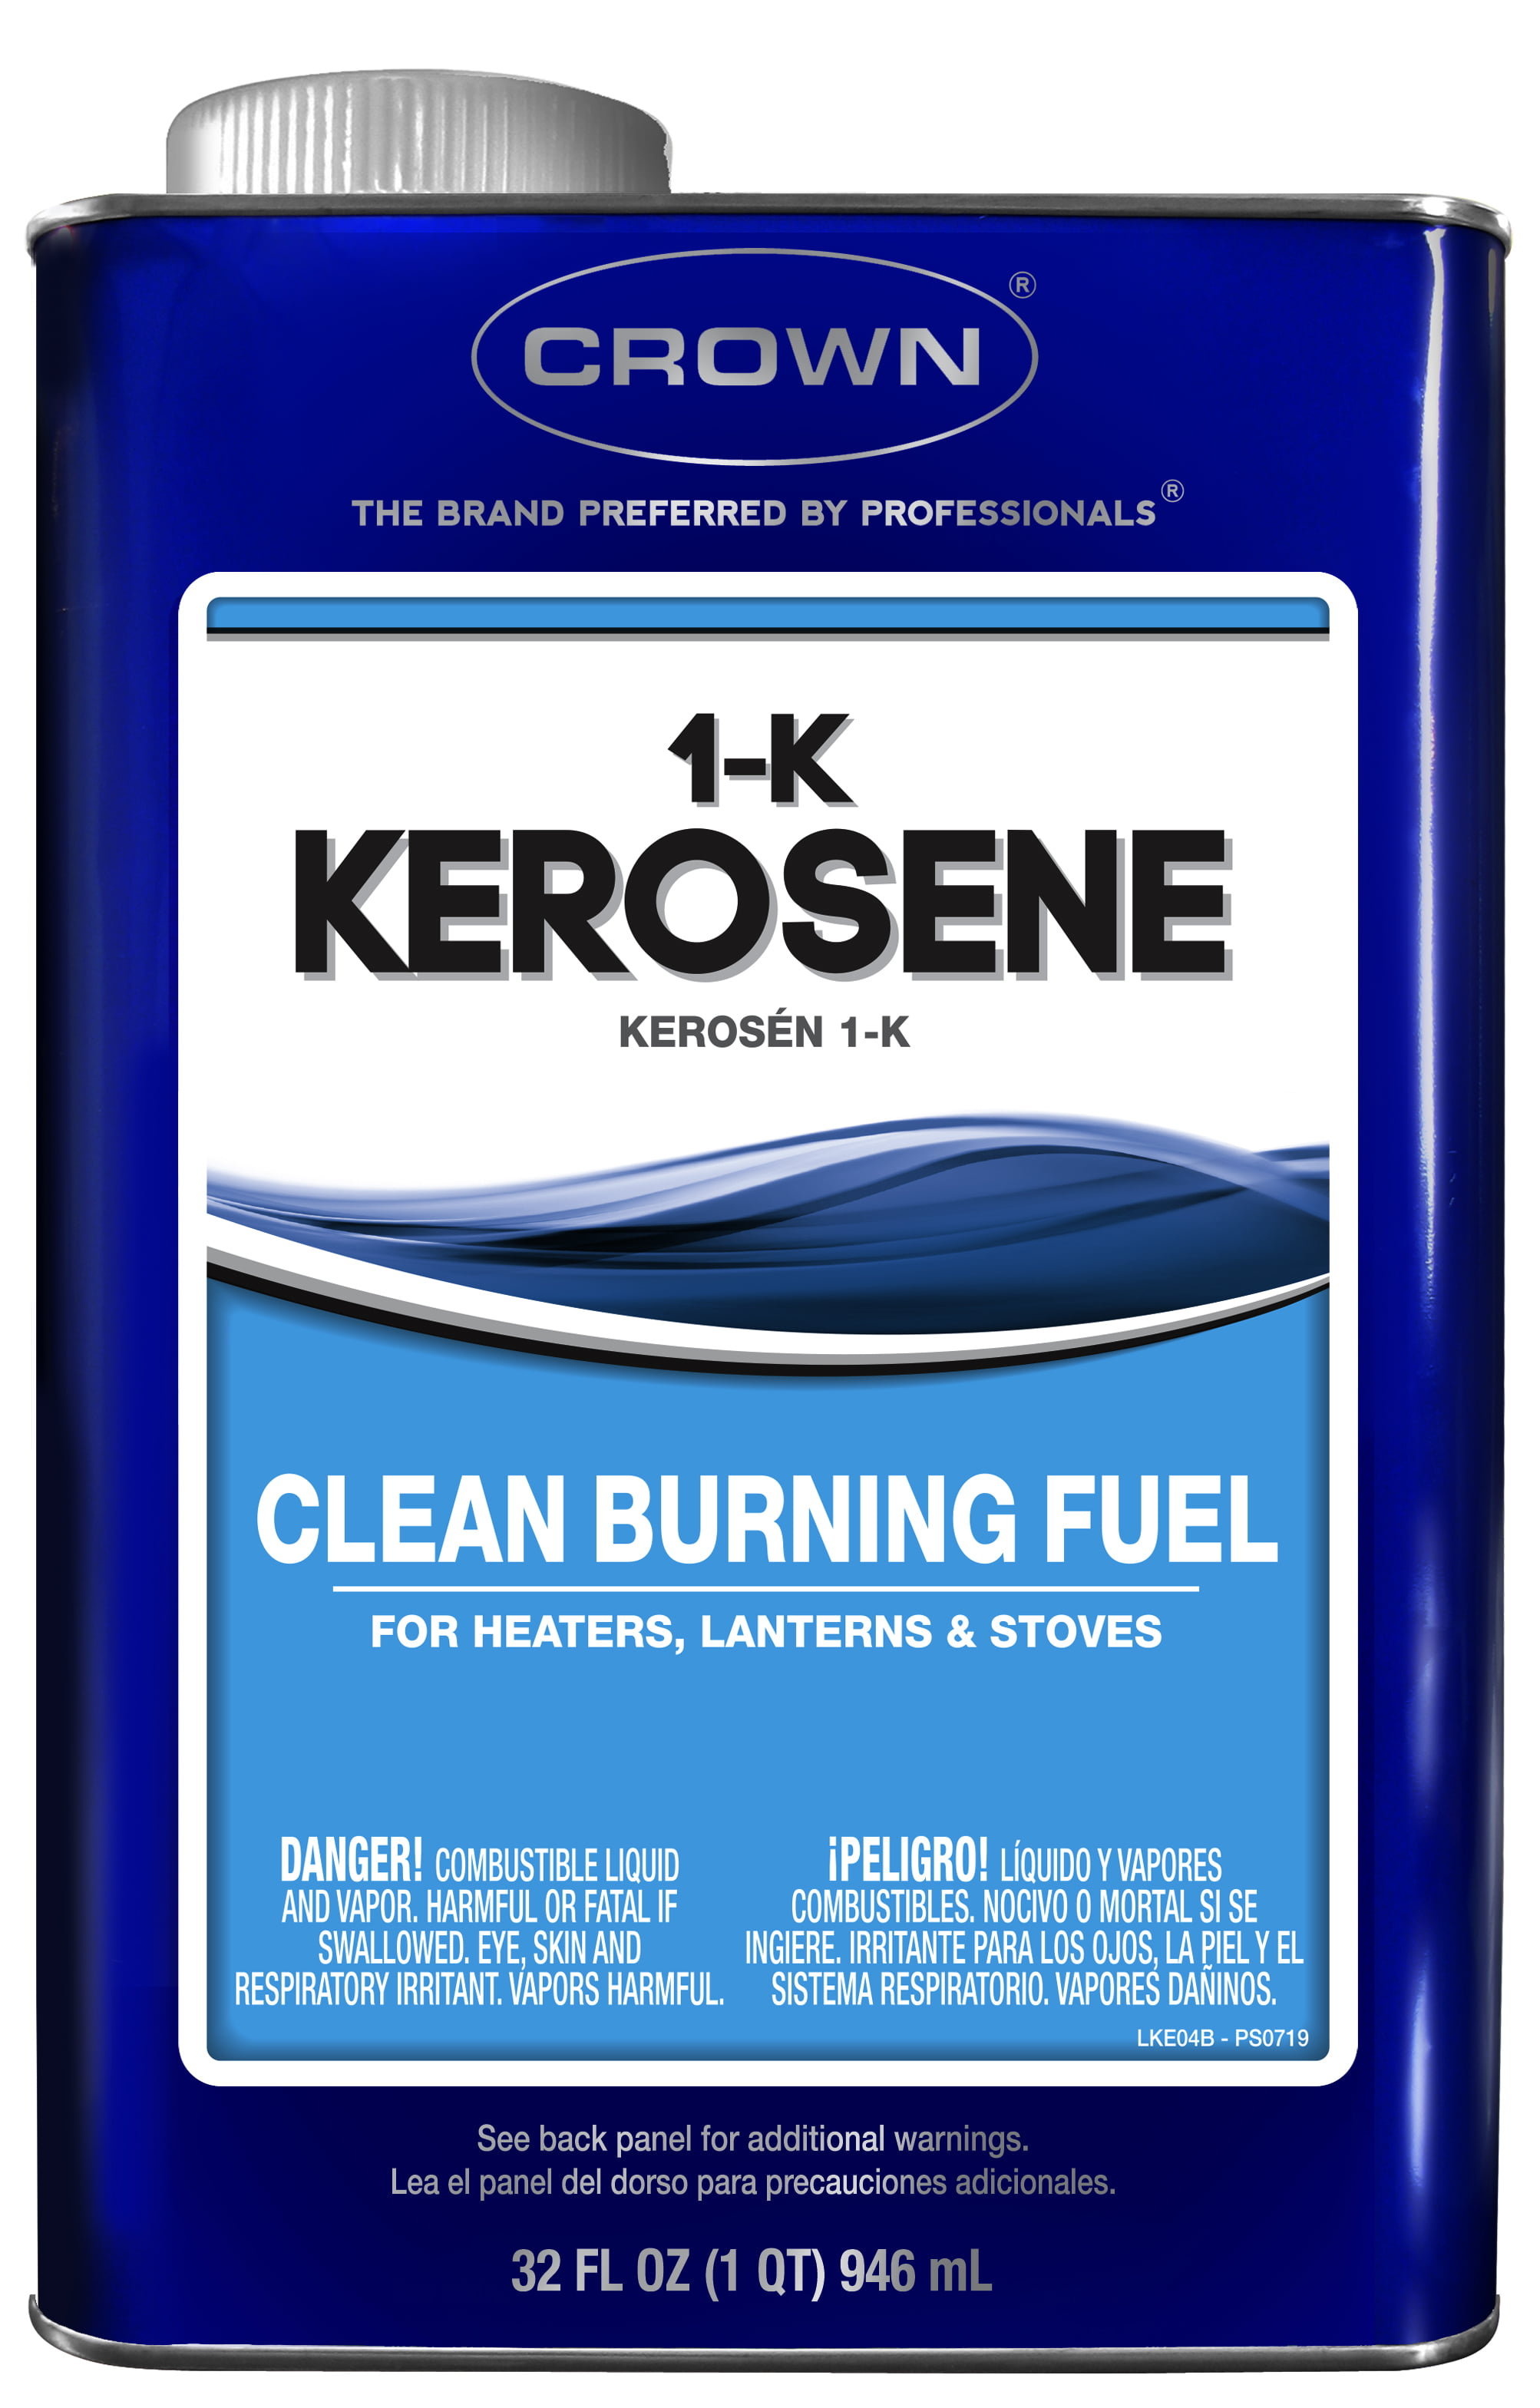 Kerosene crystal текст. Kerosene. Kerosene фото. Kerosene трек. Kerosene slowedreverb.